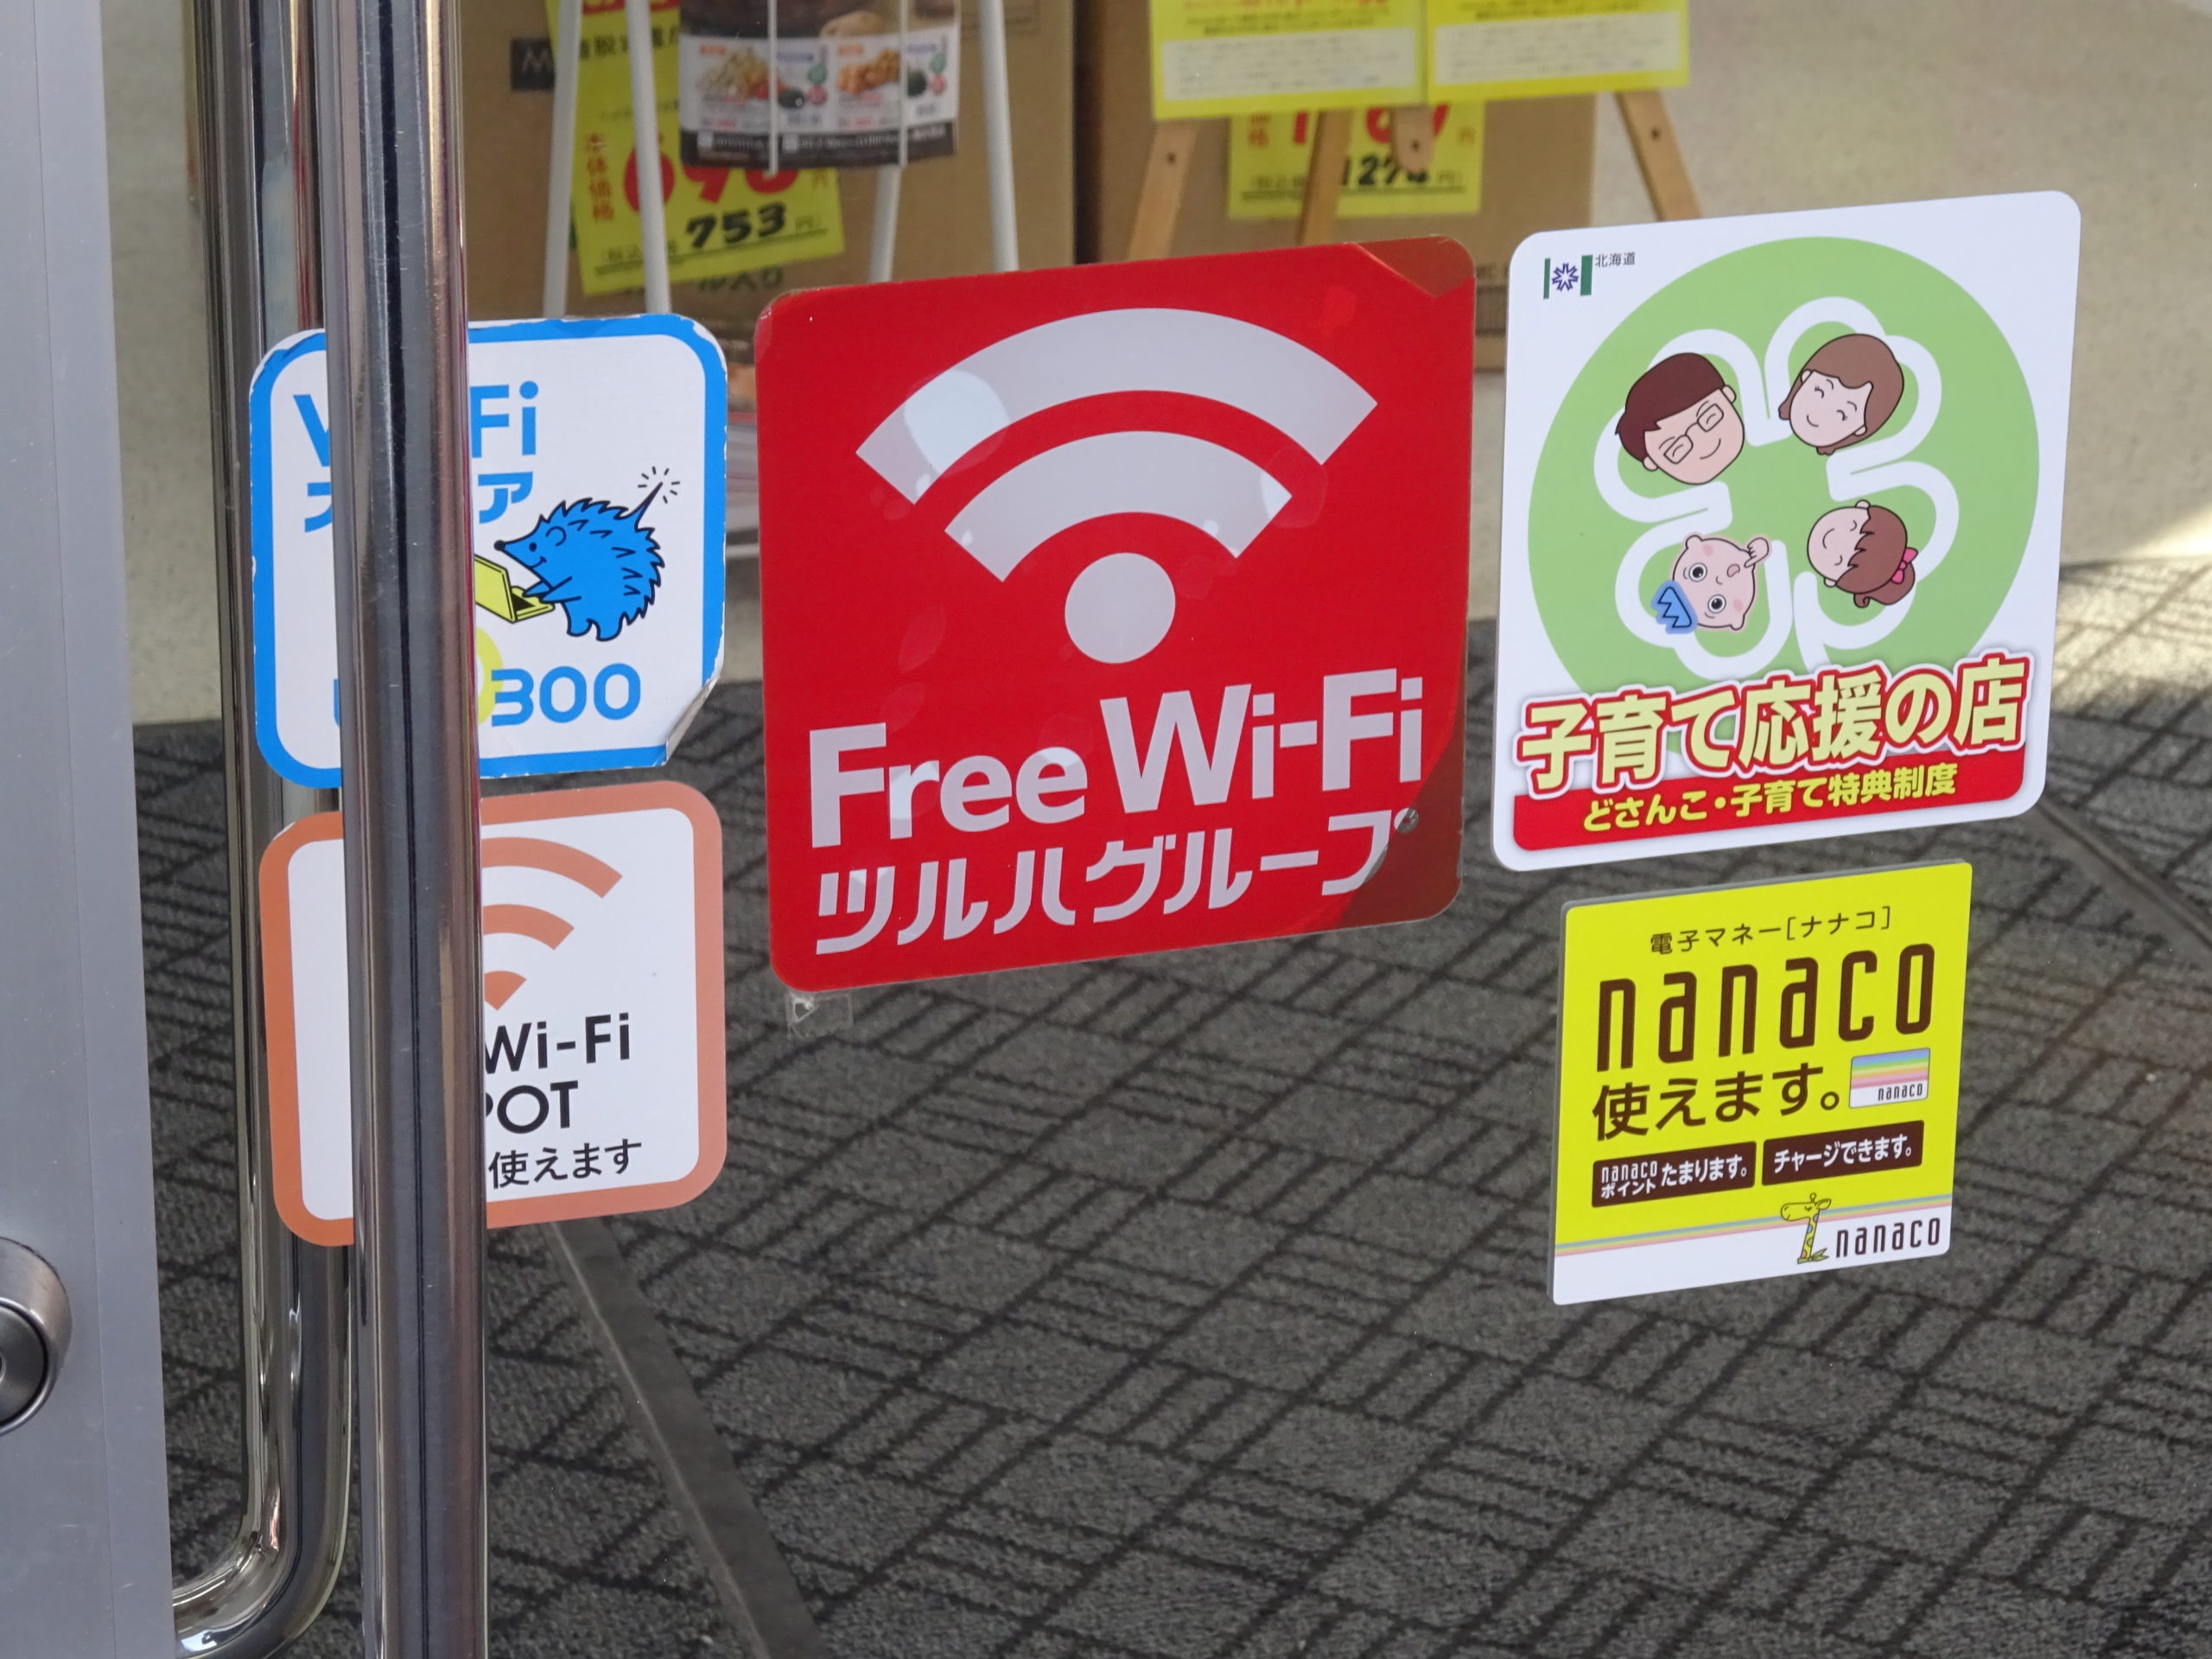 TSURUHA Free Wi-Fi(ツルハフリーWi-Fi)